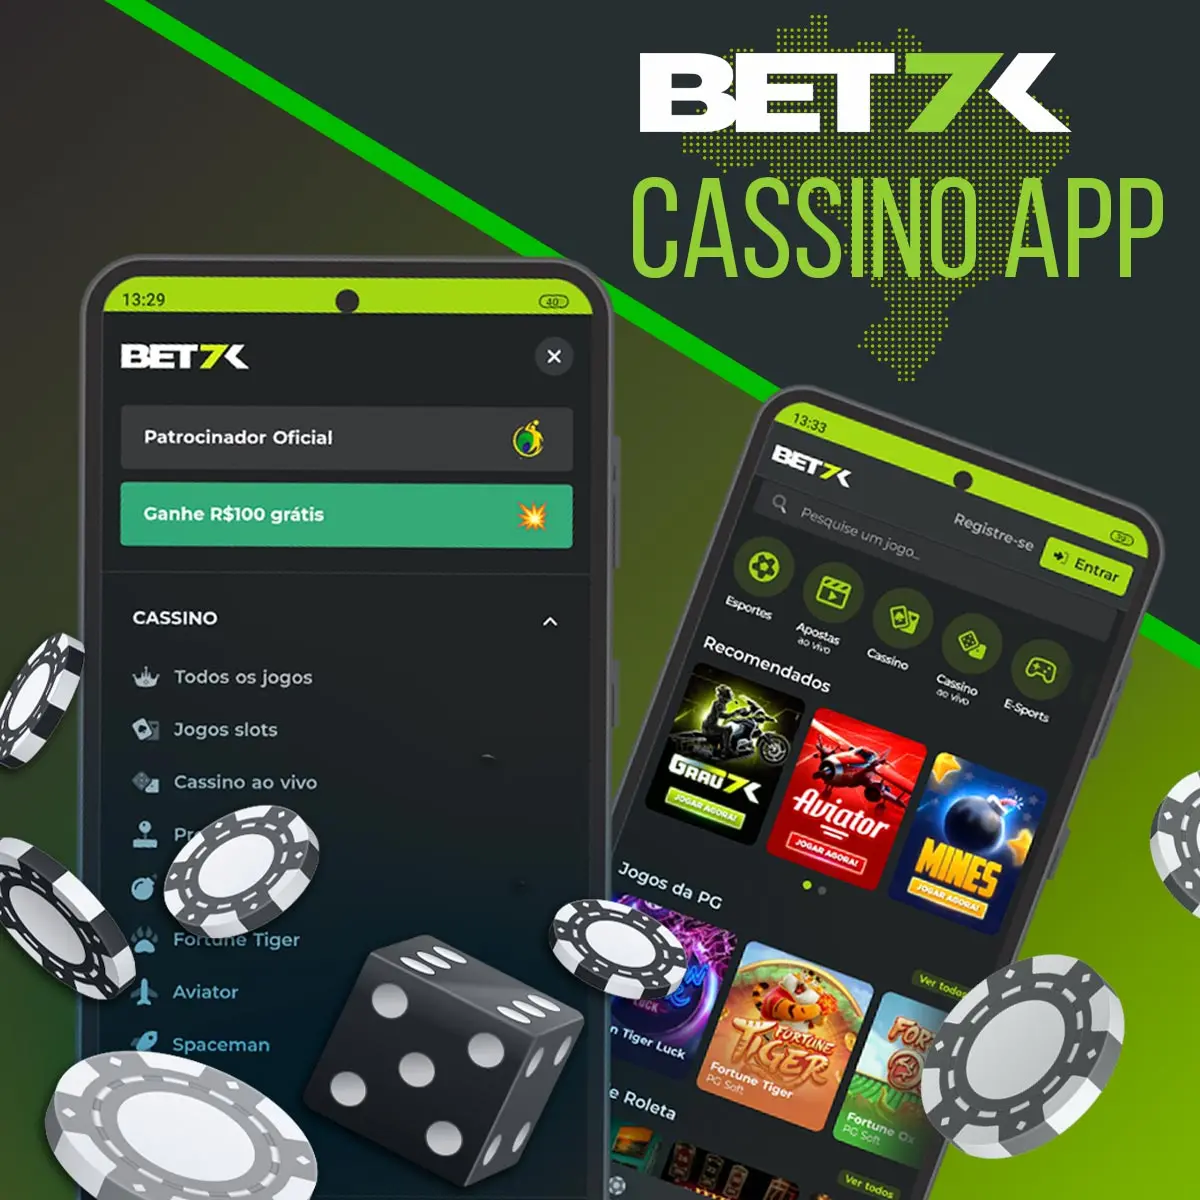 Revisão do site de apostas no aplicativo do cassino Bet7k no Brasil